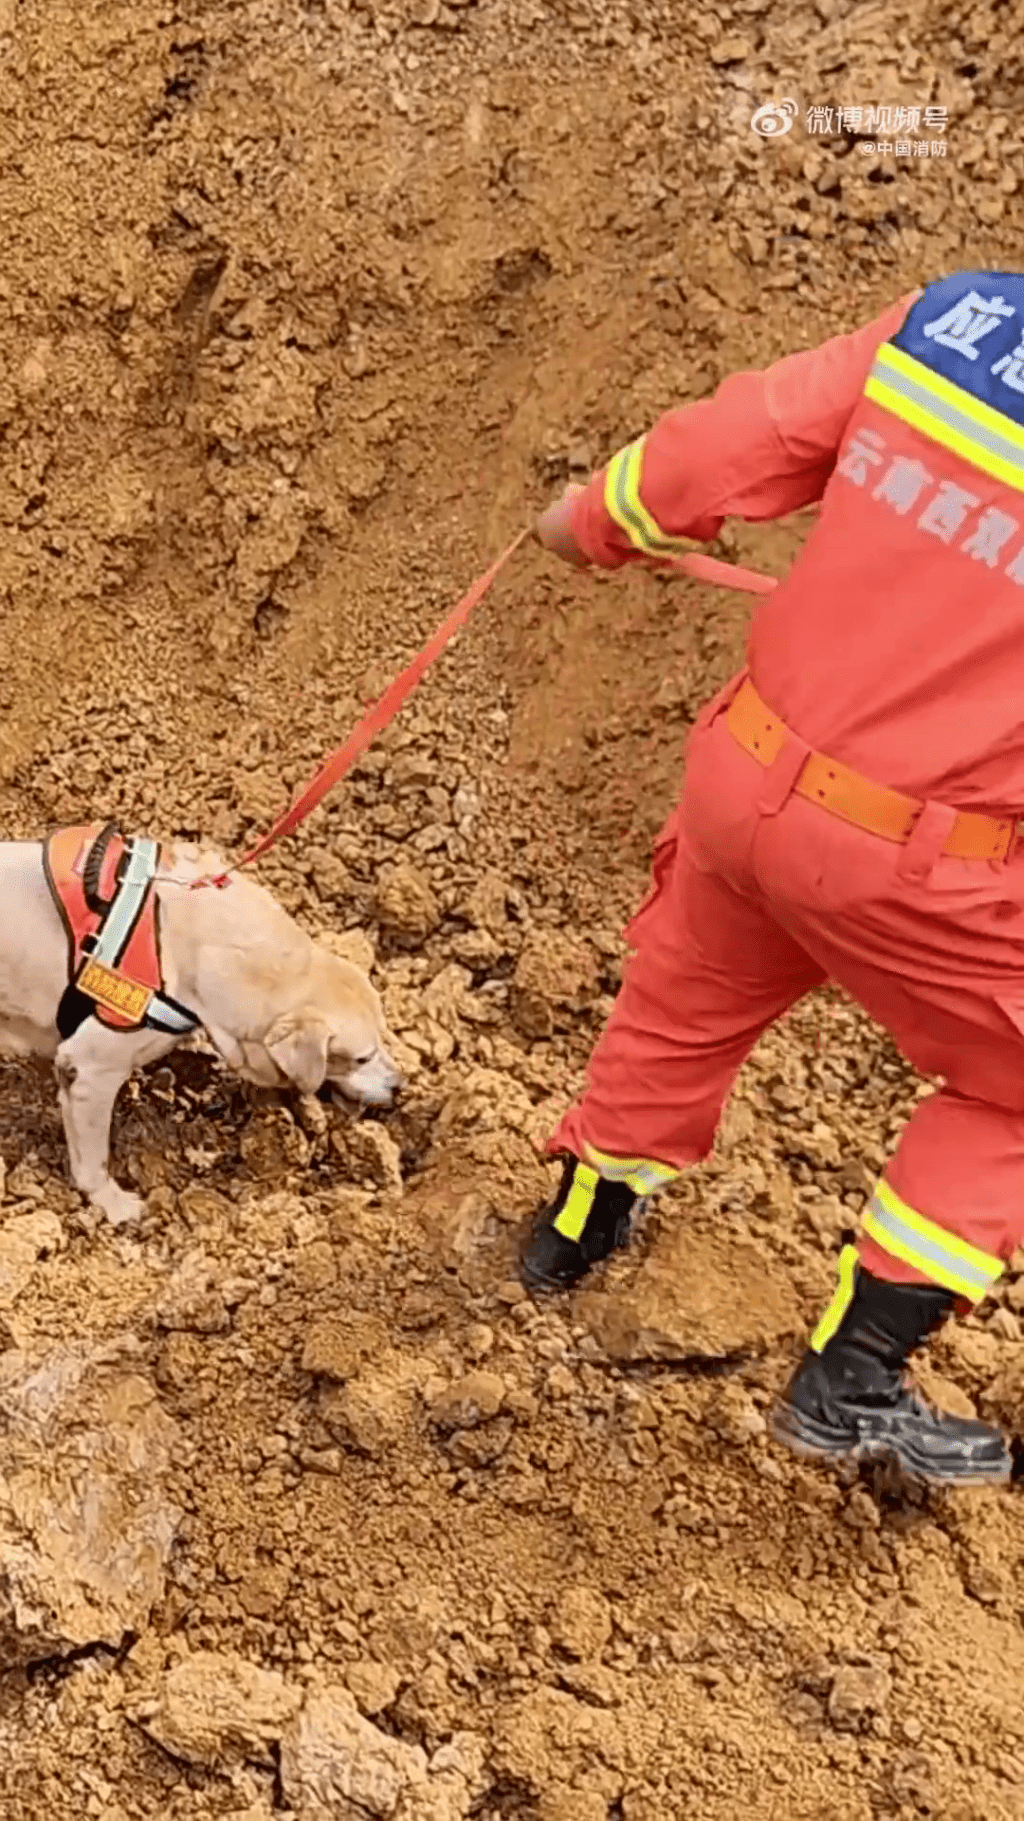 消防員出動搜救犬搜尋受困人士。 中國消防